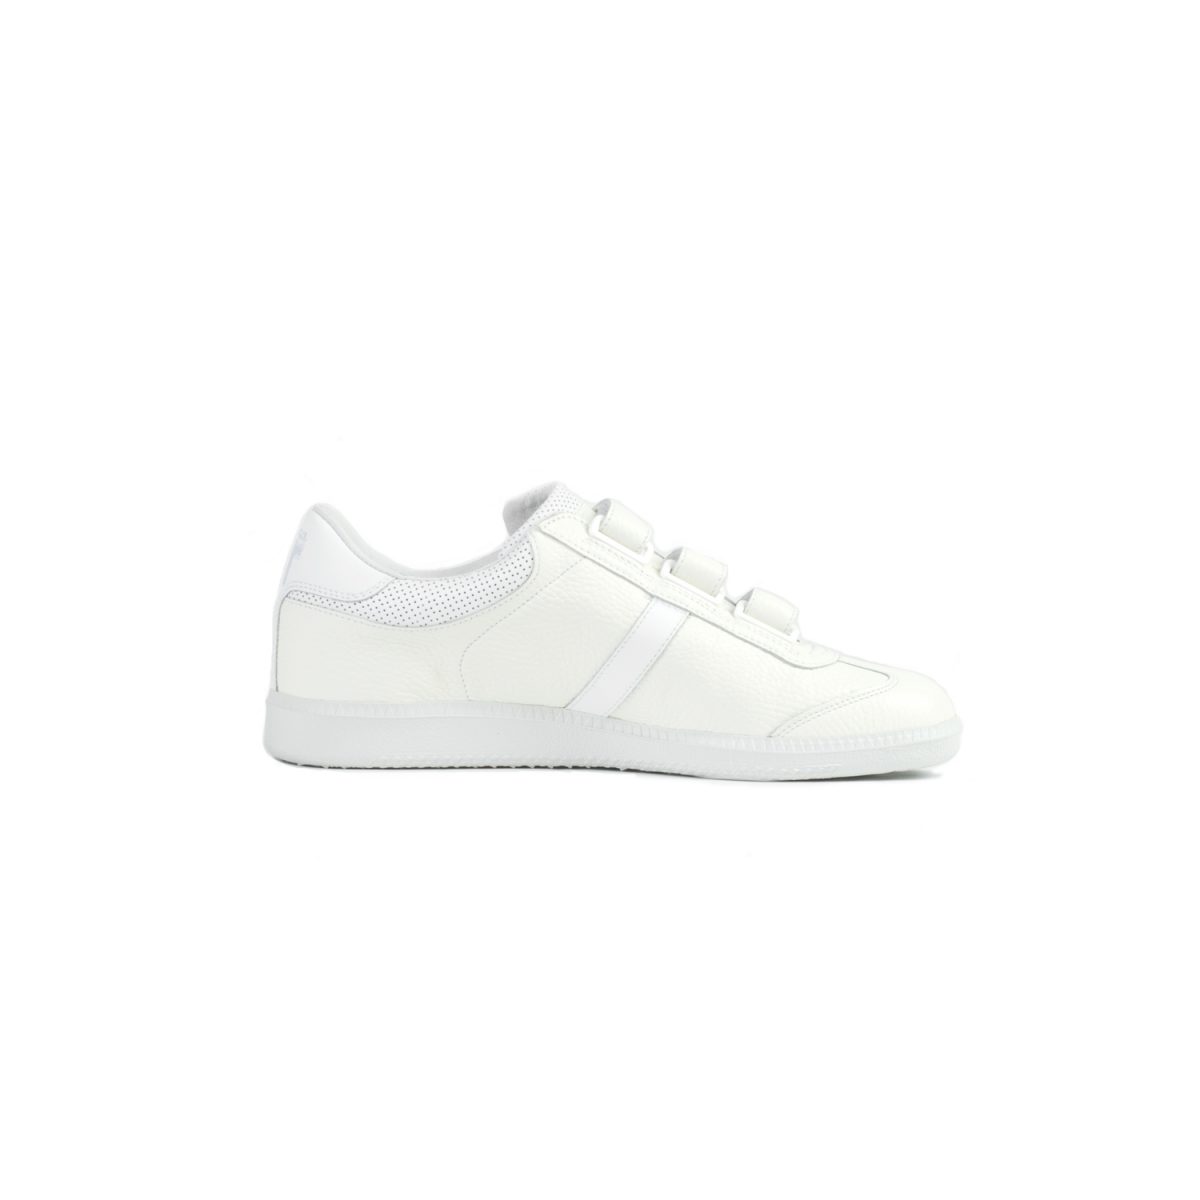 Tisza Shoes - Delux - White